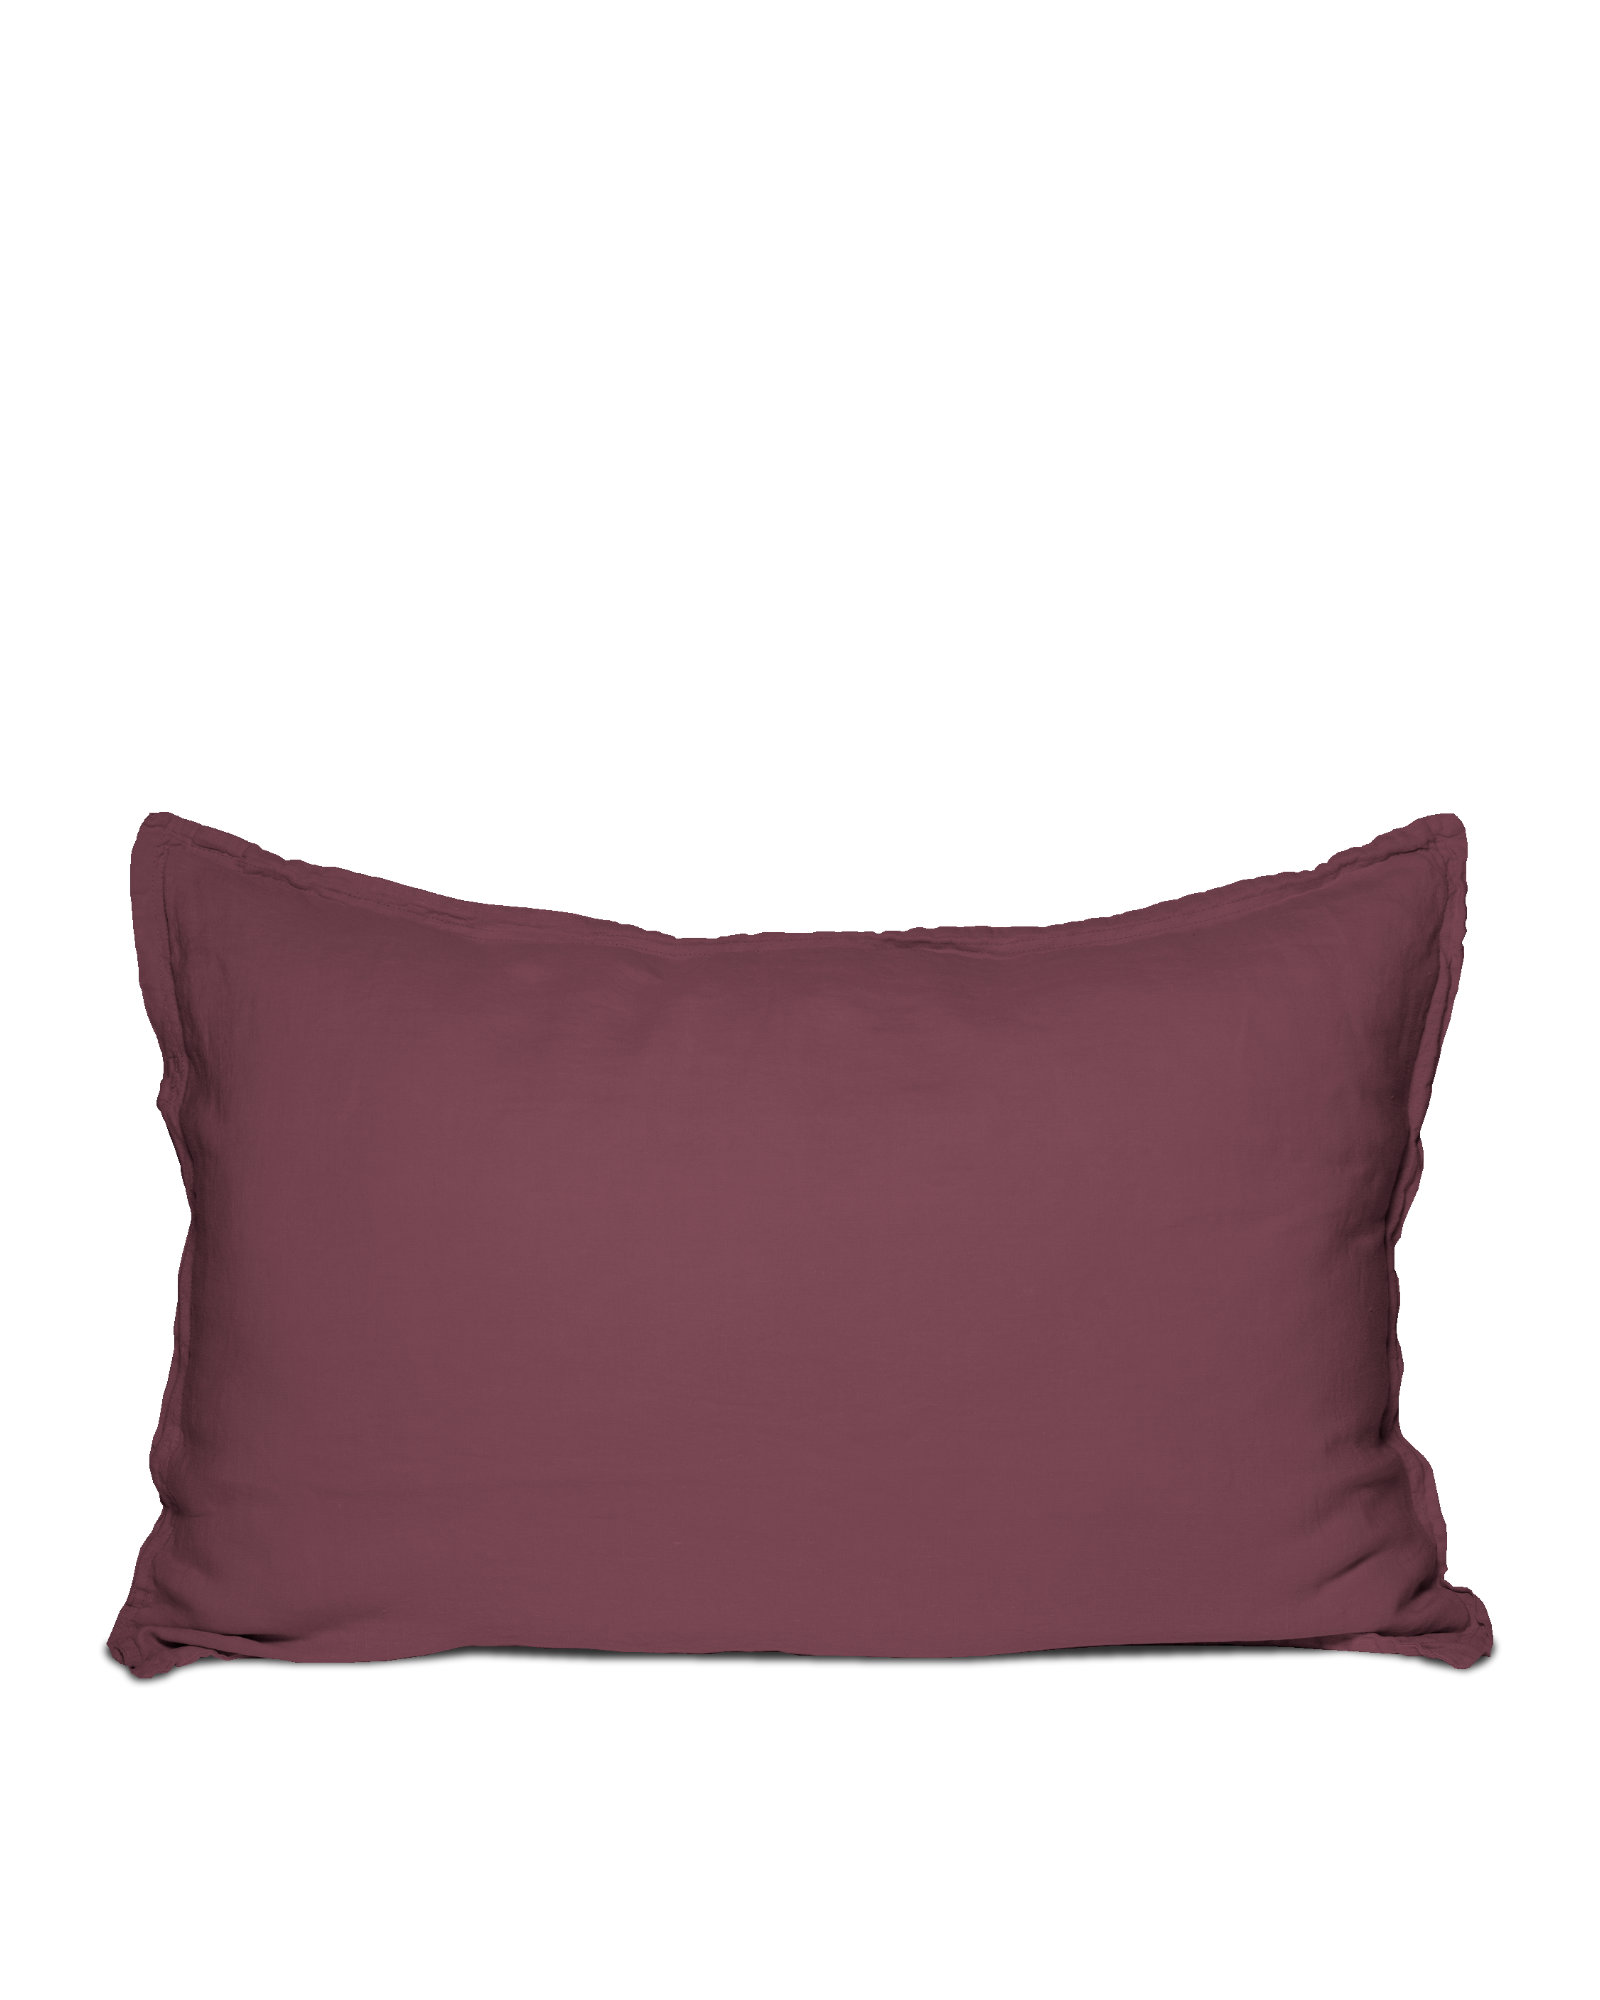 MARIE-MARIE - Pillowcase LINEN STORIES Cedarwood - 50x75 cm - Cedarwood